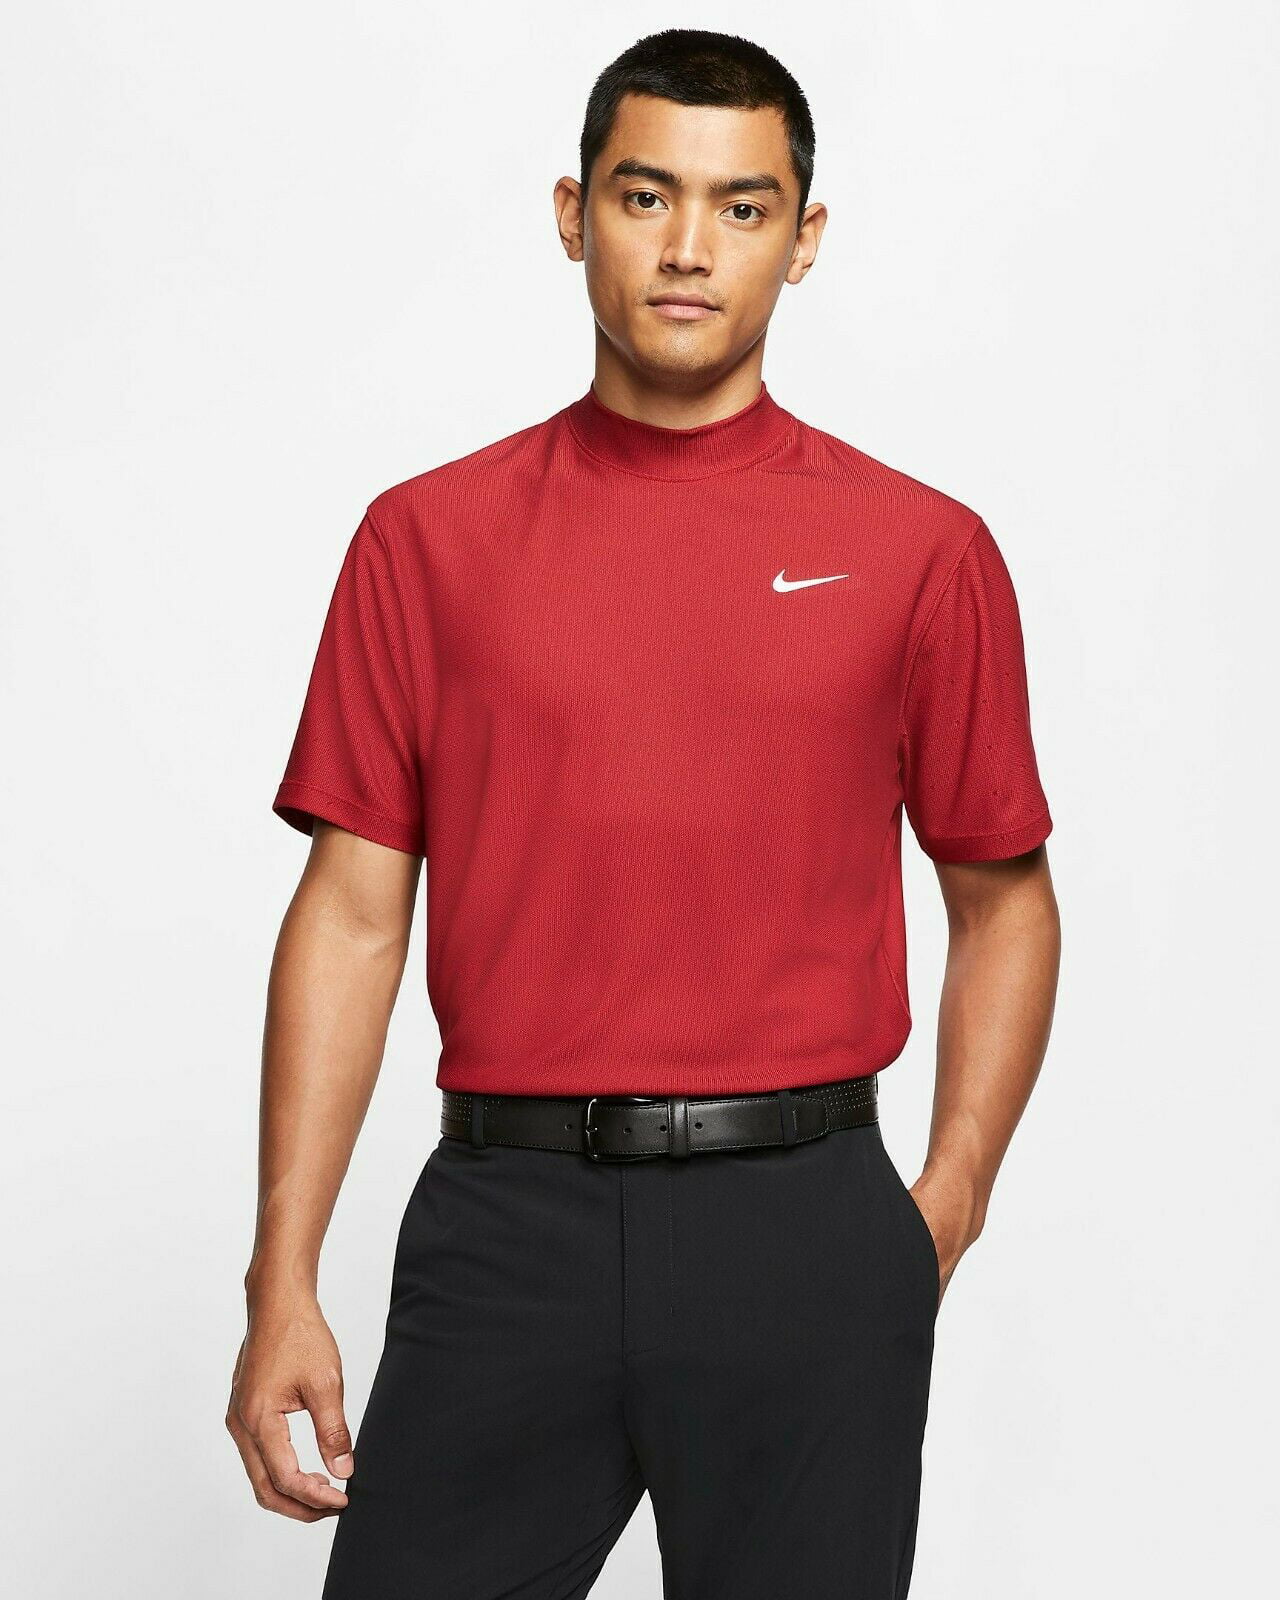 Nike Dri-FIT Tiger Woods Gym Red/Black Men's Mock-Neck Golf Top Size M ...